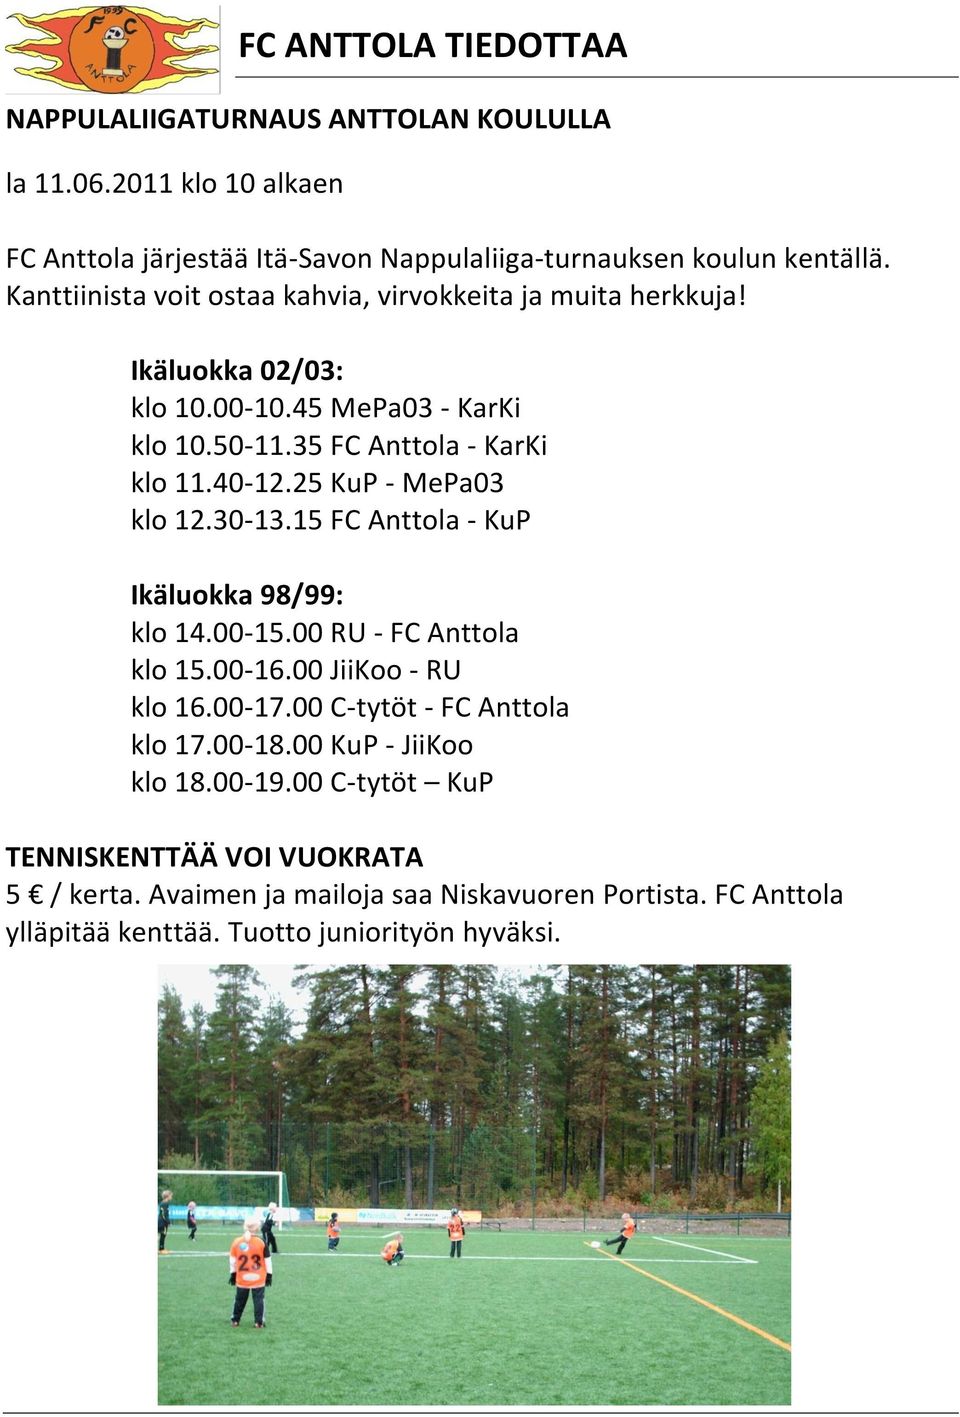 25 KuP - MePa03 klo 12.30-13.15 FC Anttola - KuP Ikäluokka 98/99: klo 14.00-15.00 RU - FC Anttola klo 15.00-16.00 JiiKoo - RU klo 16.00-17.00 C-tytöt - FC Anttola klo 17.